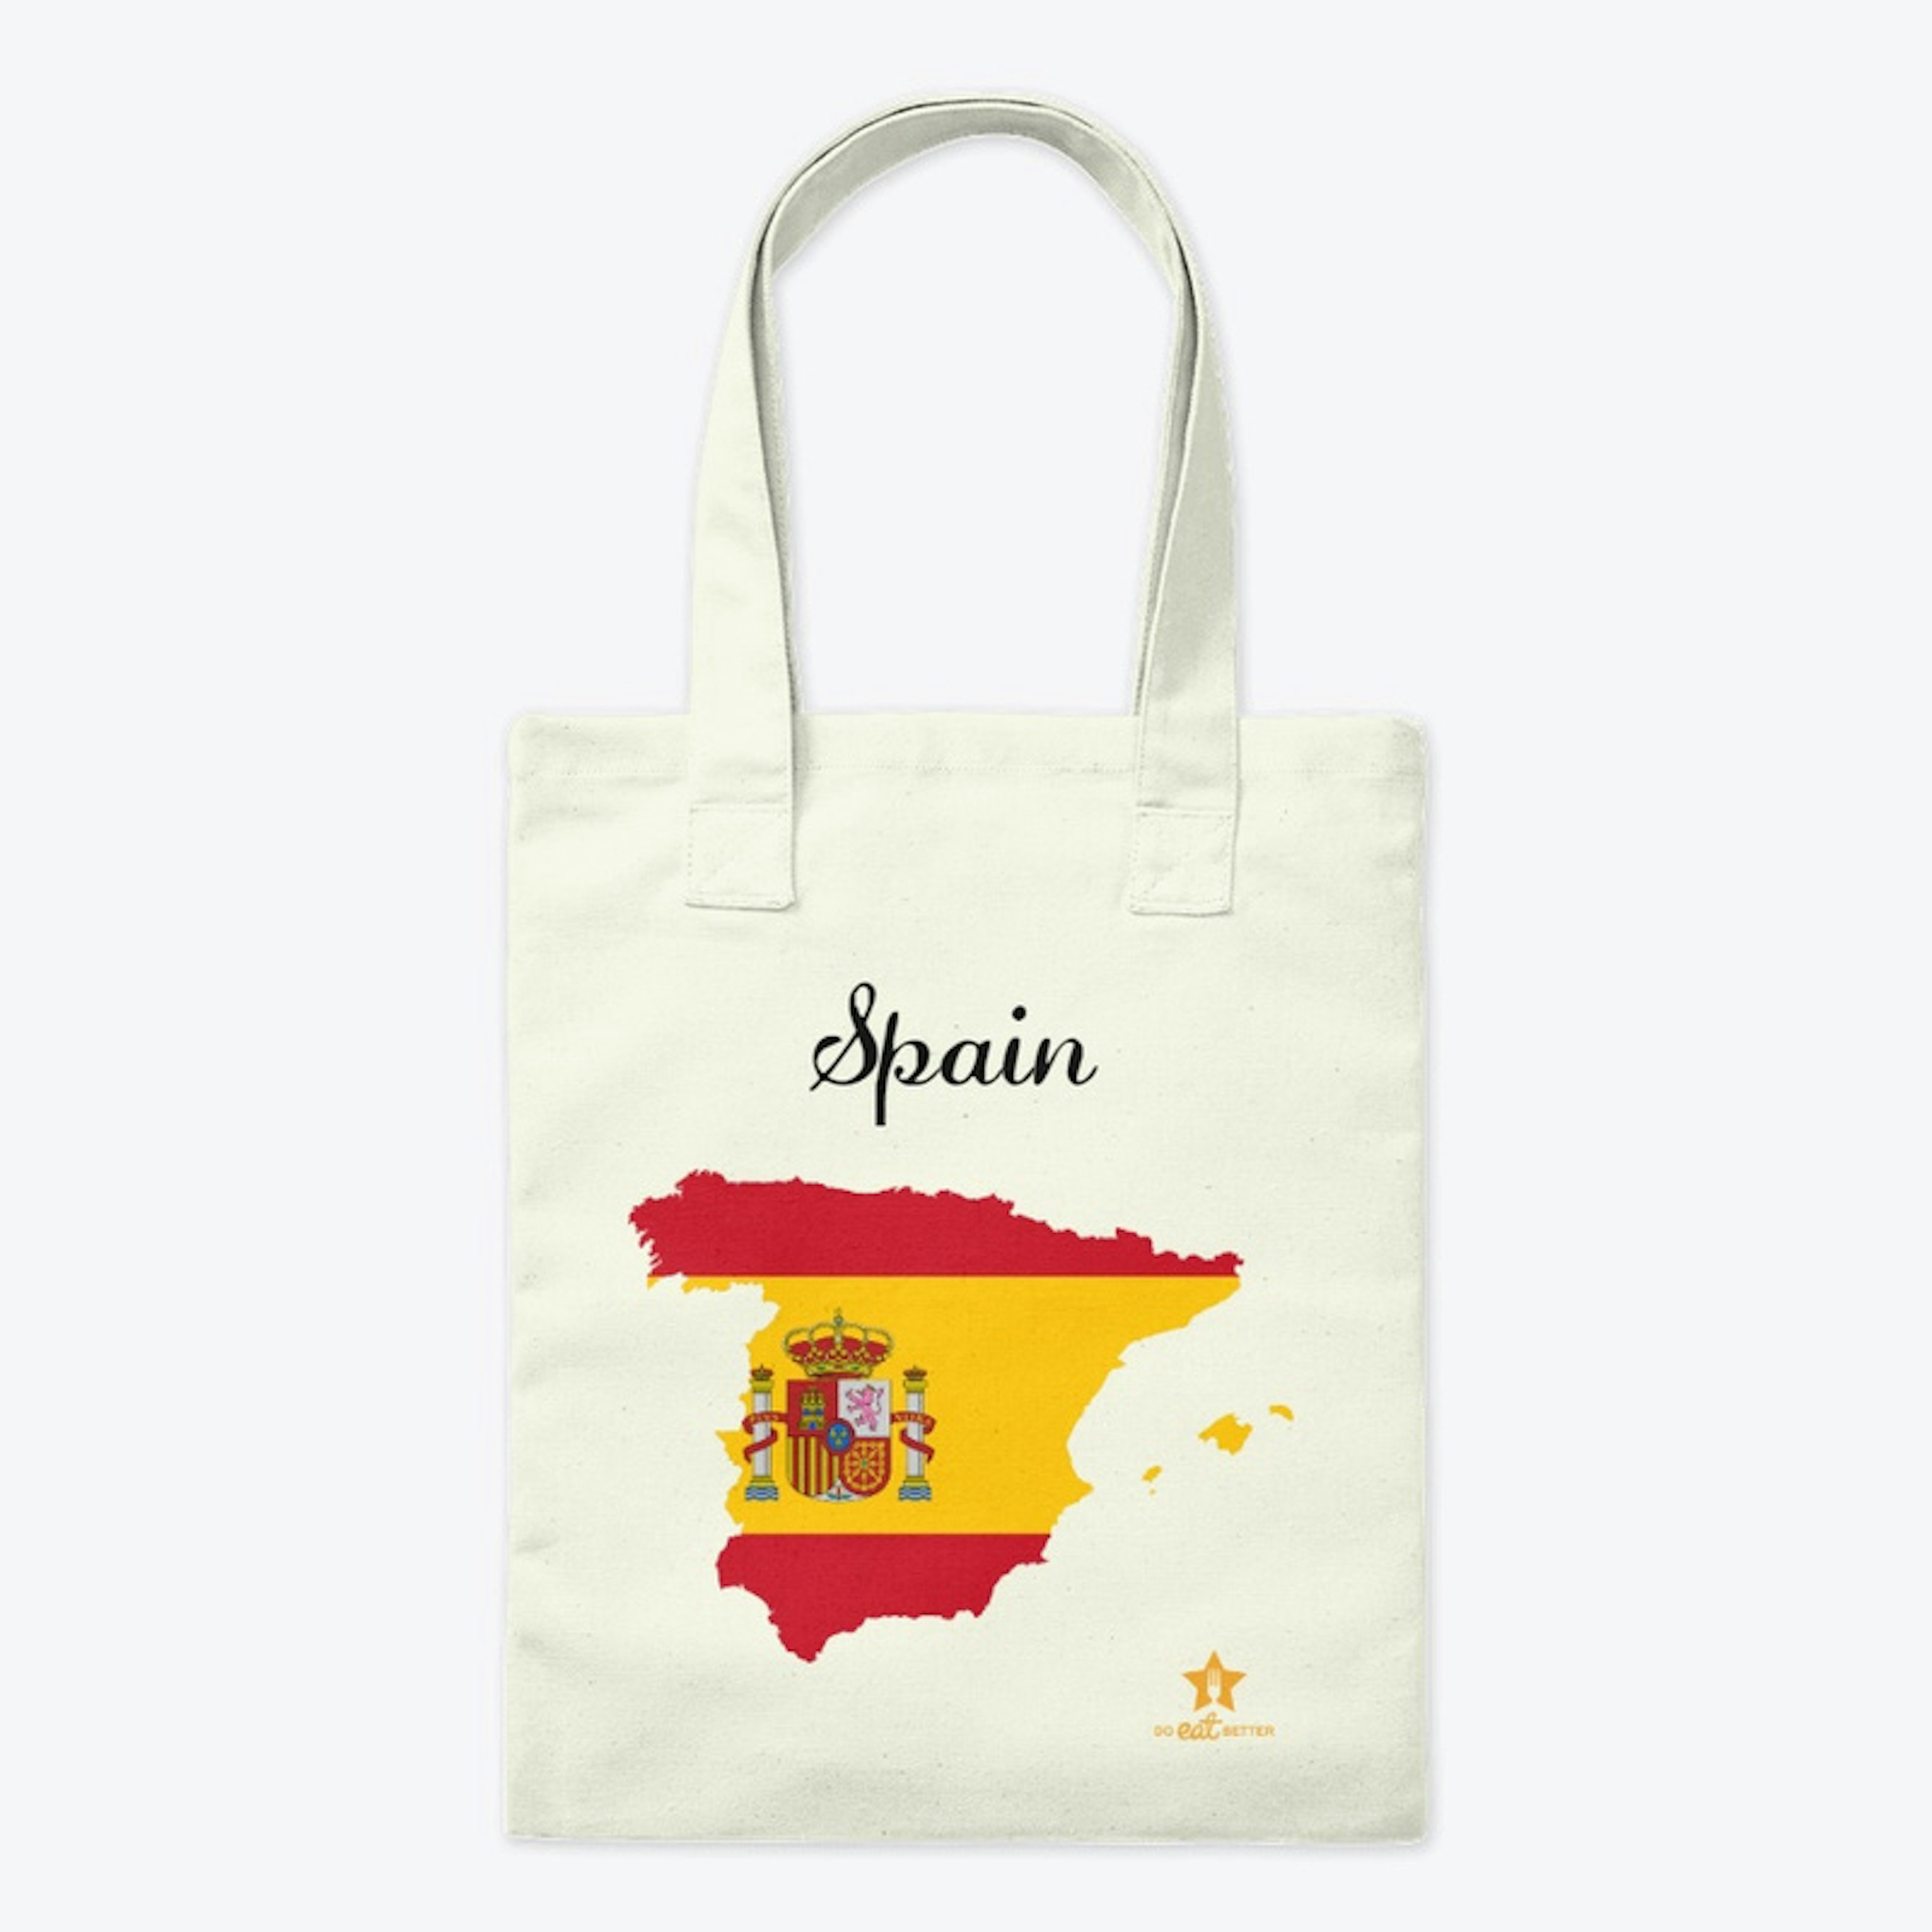 Spain- Bag